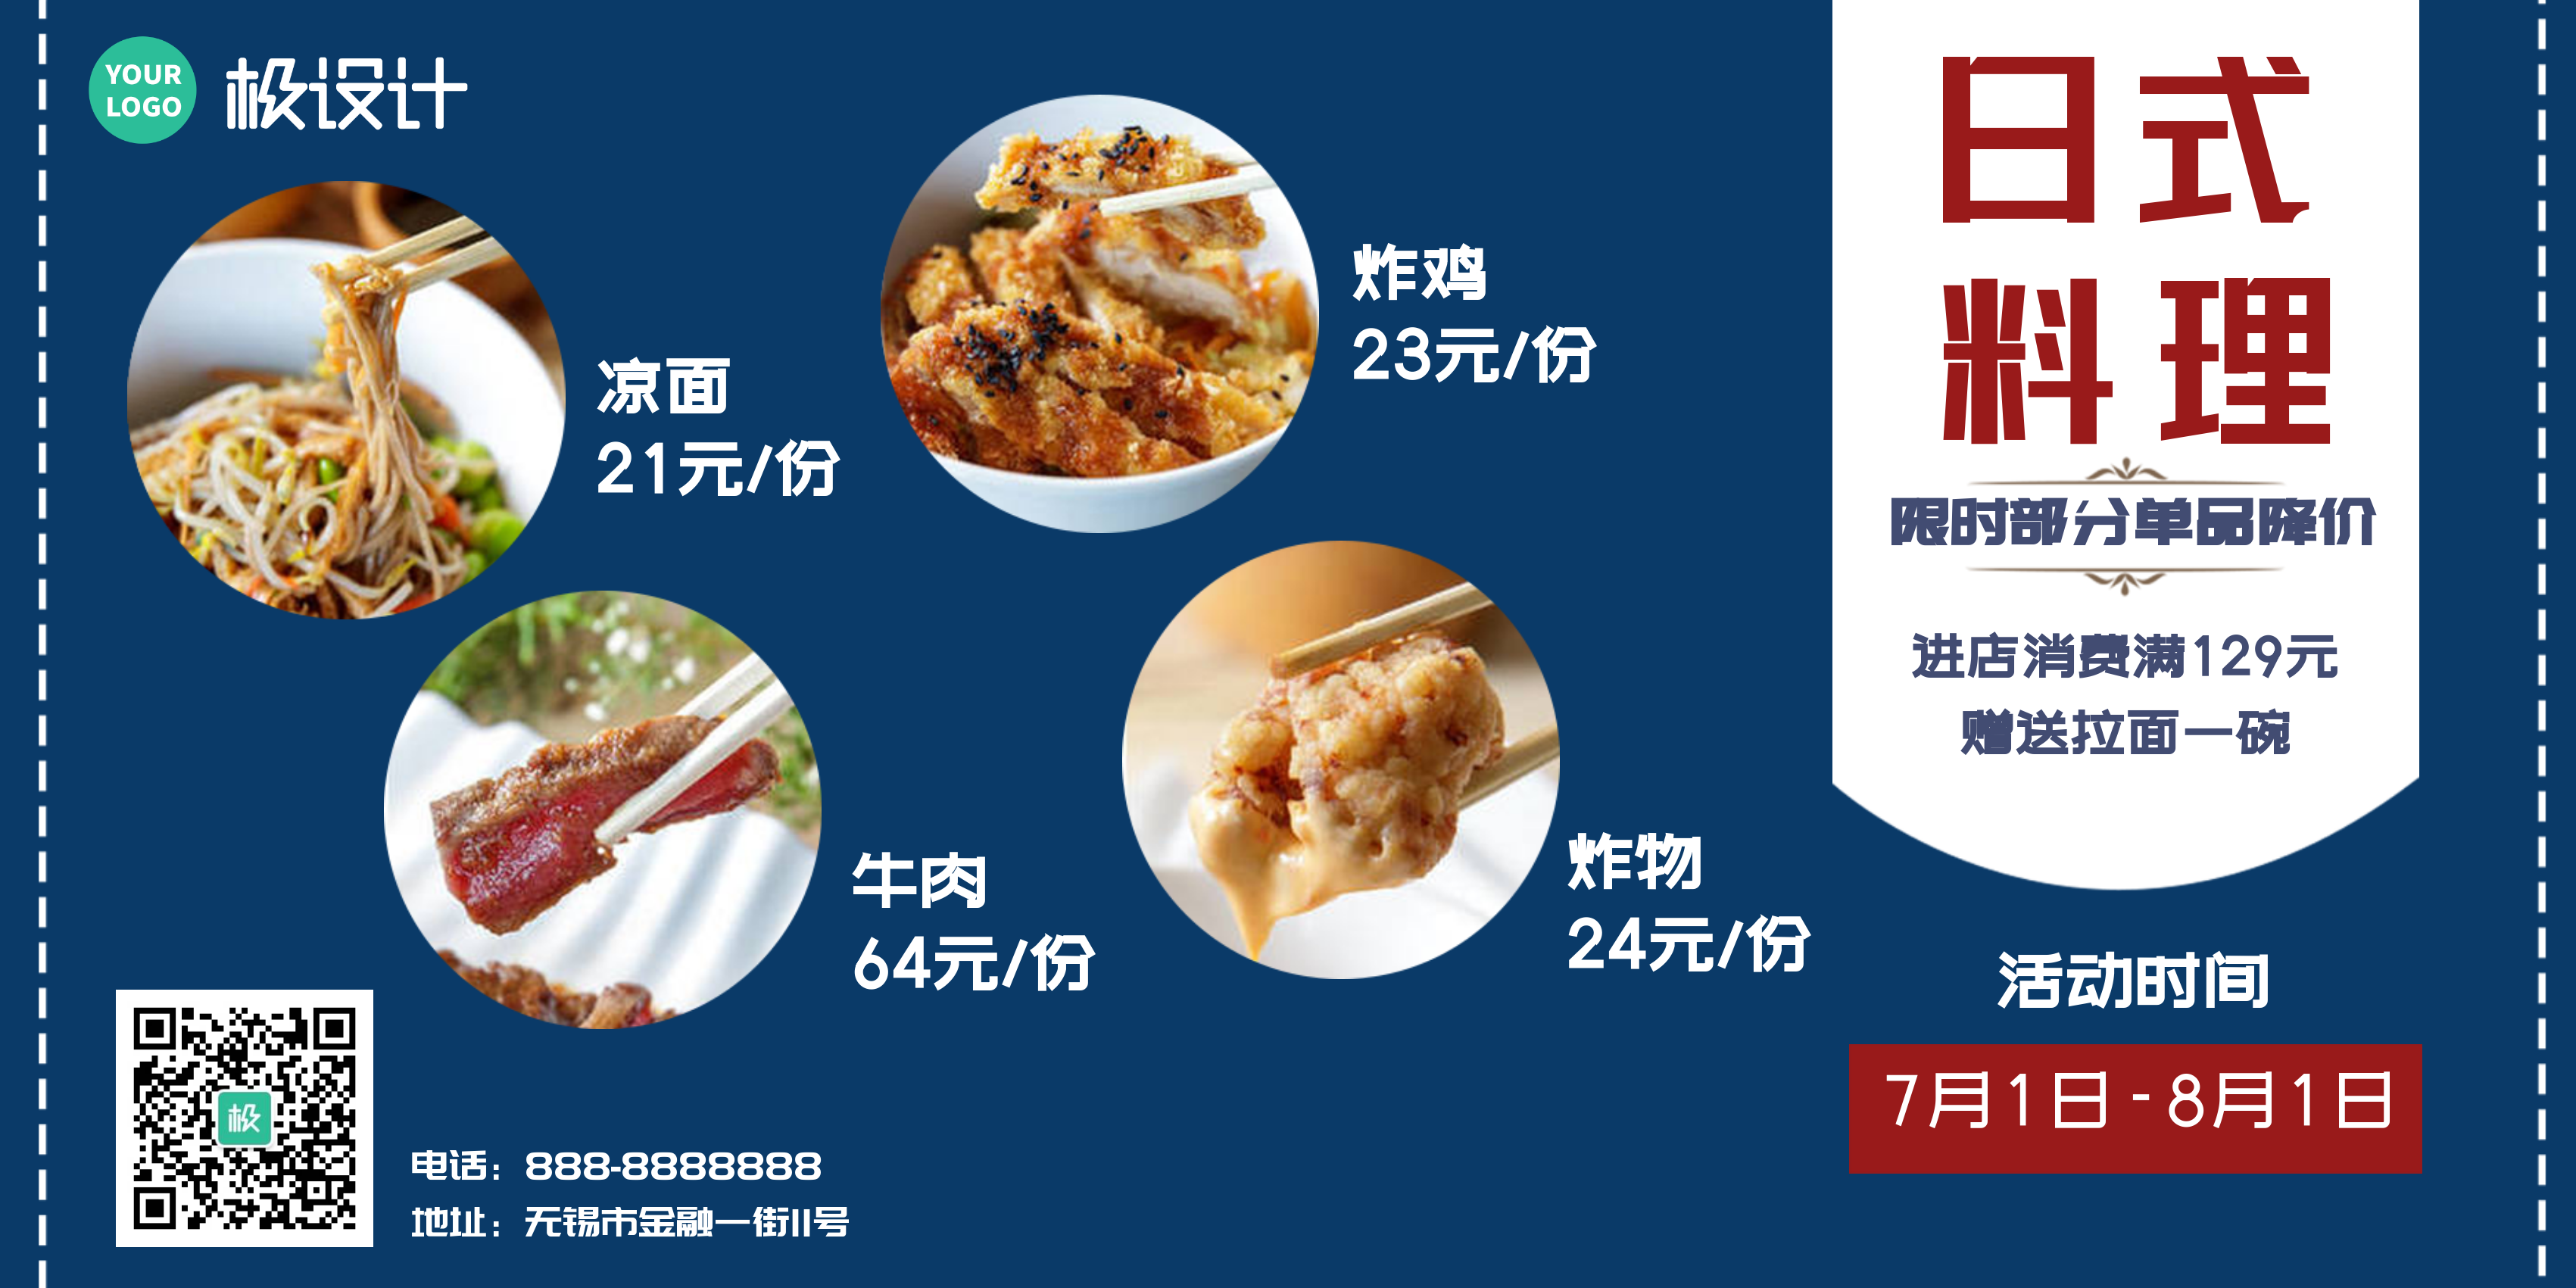 日式料理限时部分单品特价